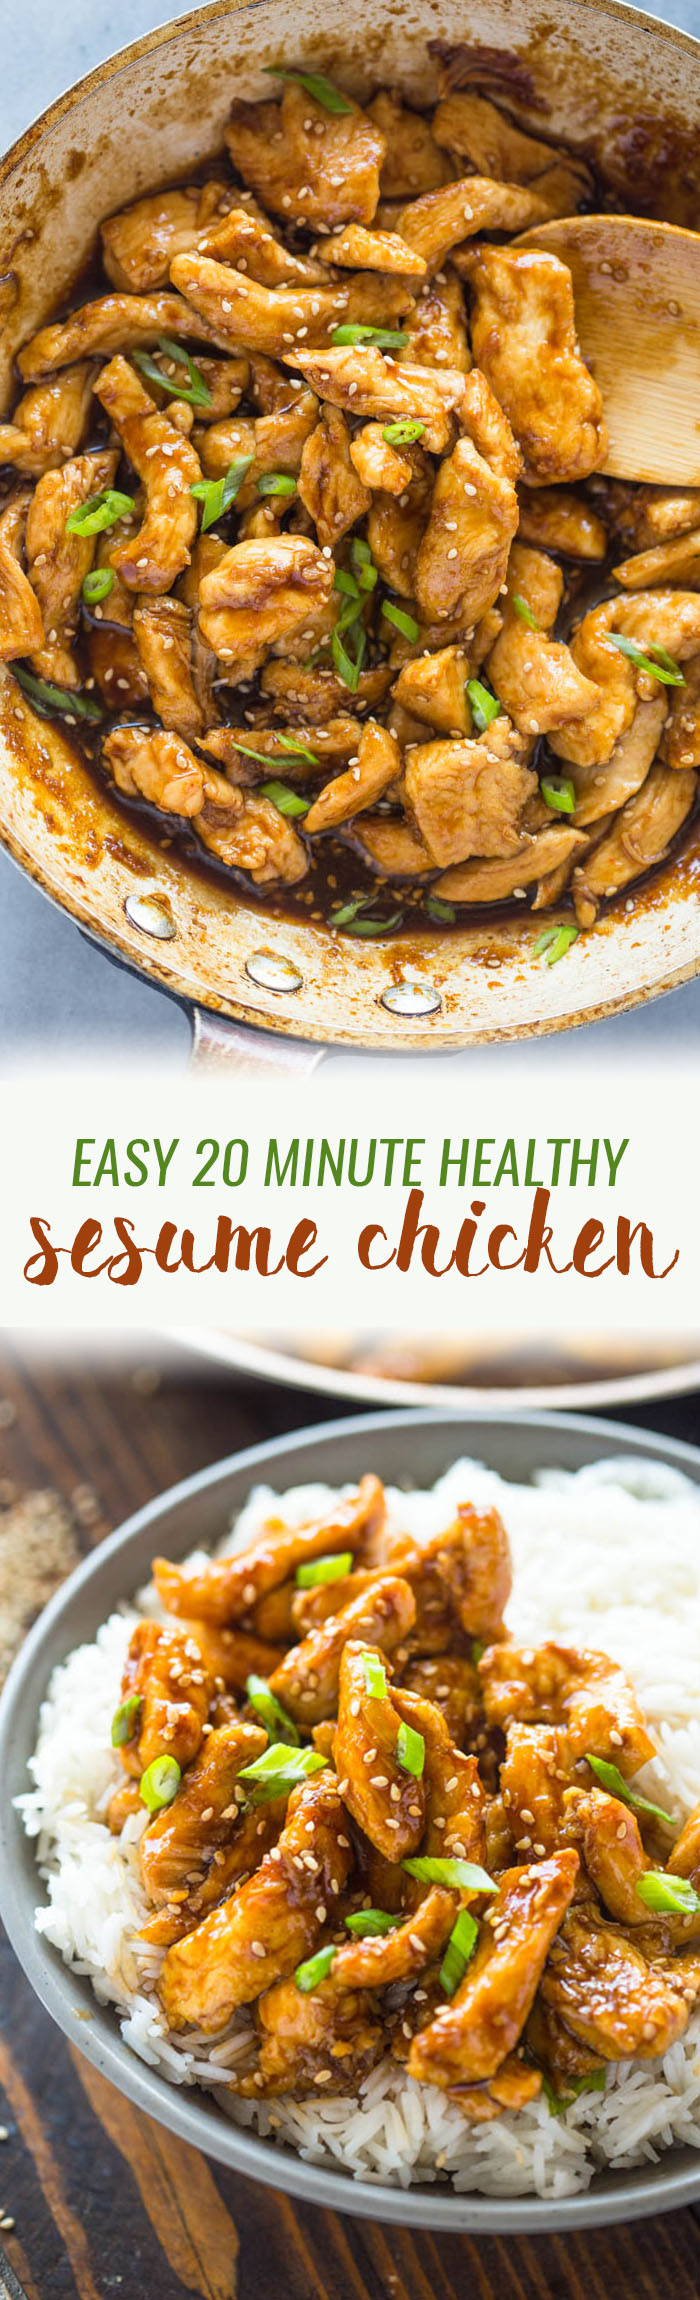 Healthier 20 Minute Sesame Chicken